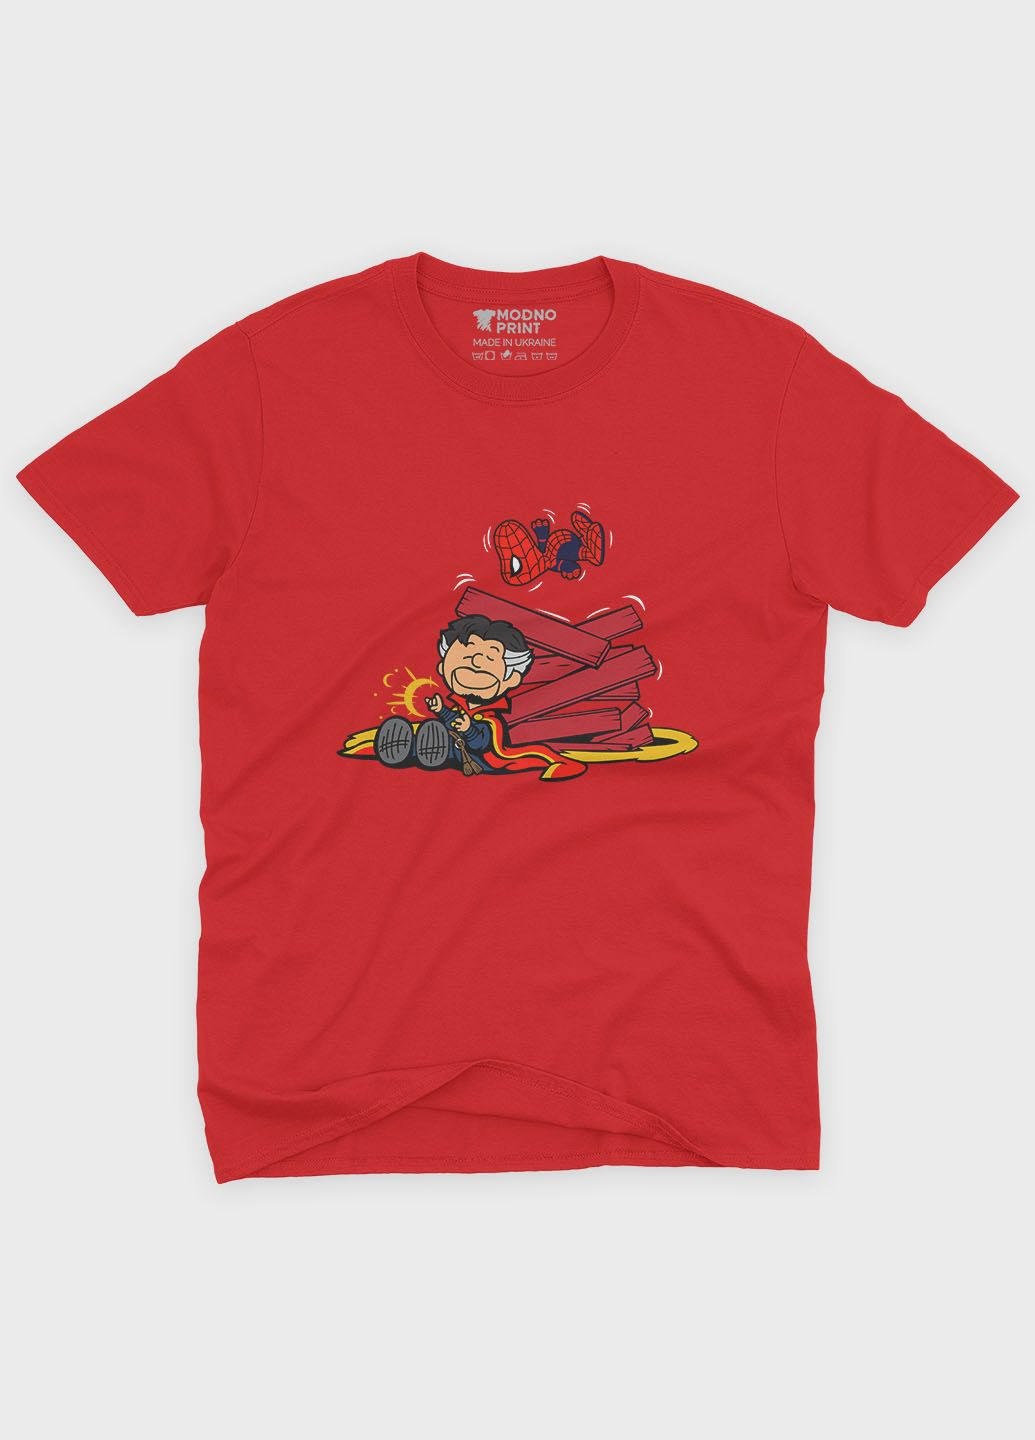 Червона демісезонна футболка для хлопчика з принтом супергероя - доктор стрендж (ts001-1-sre-006-020-009-b) Modno